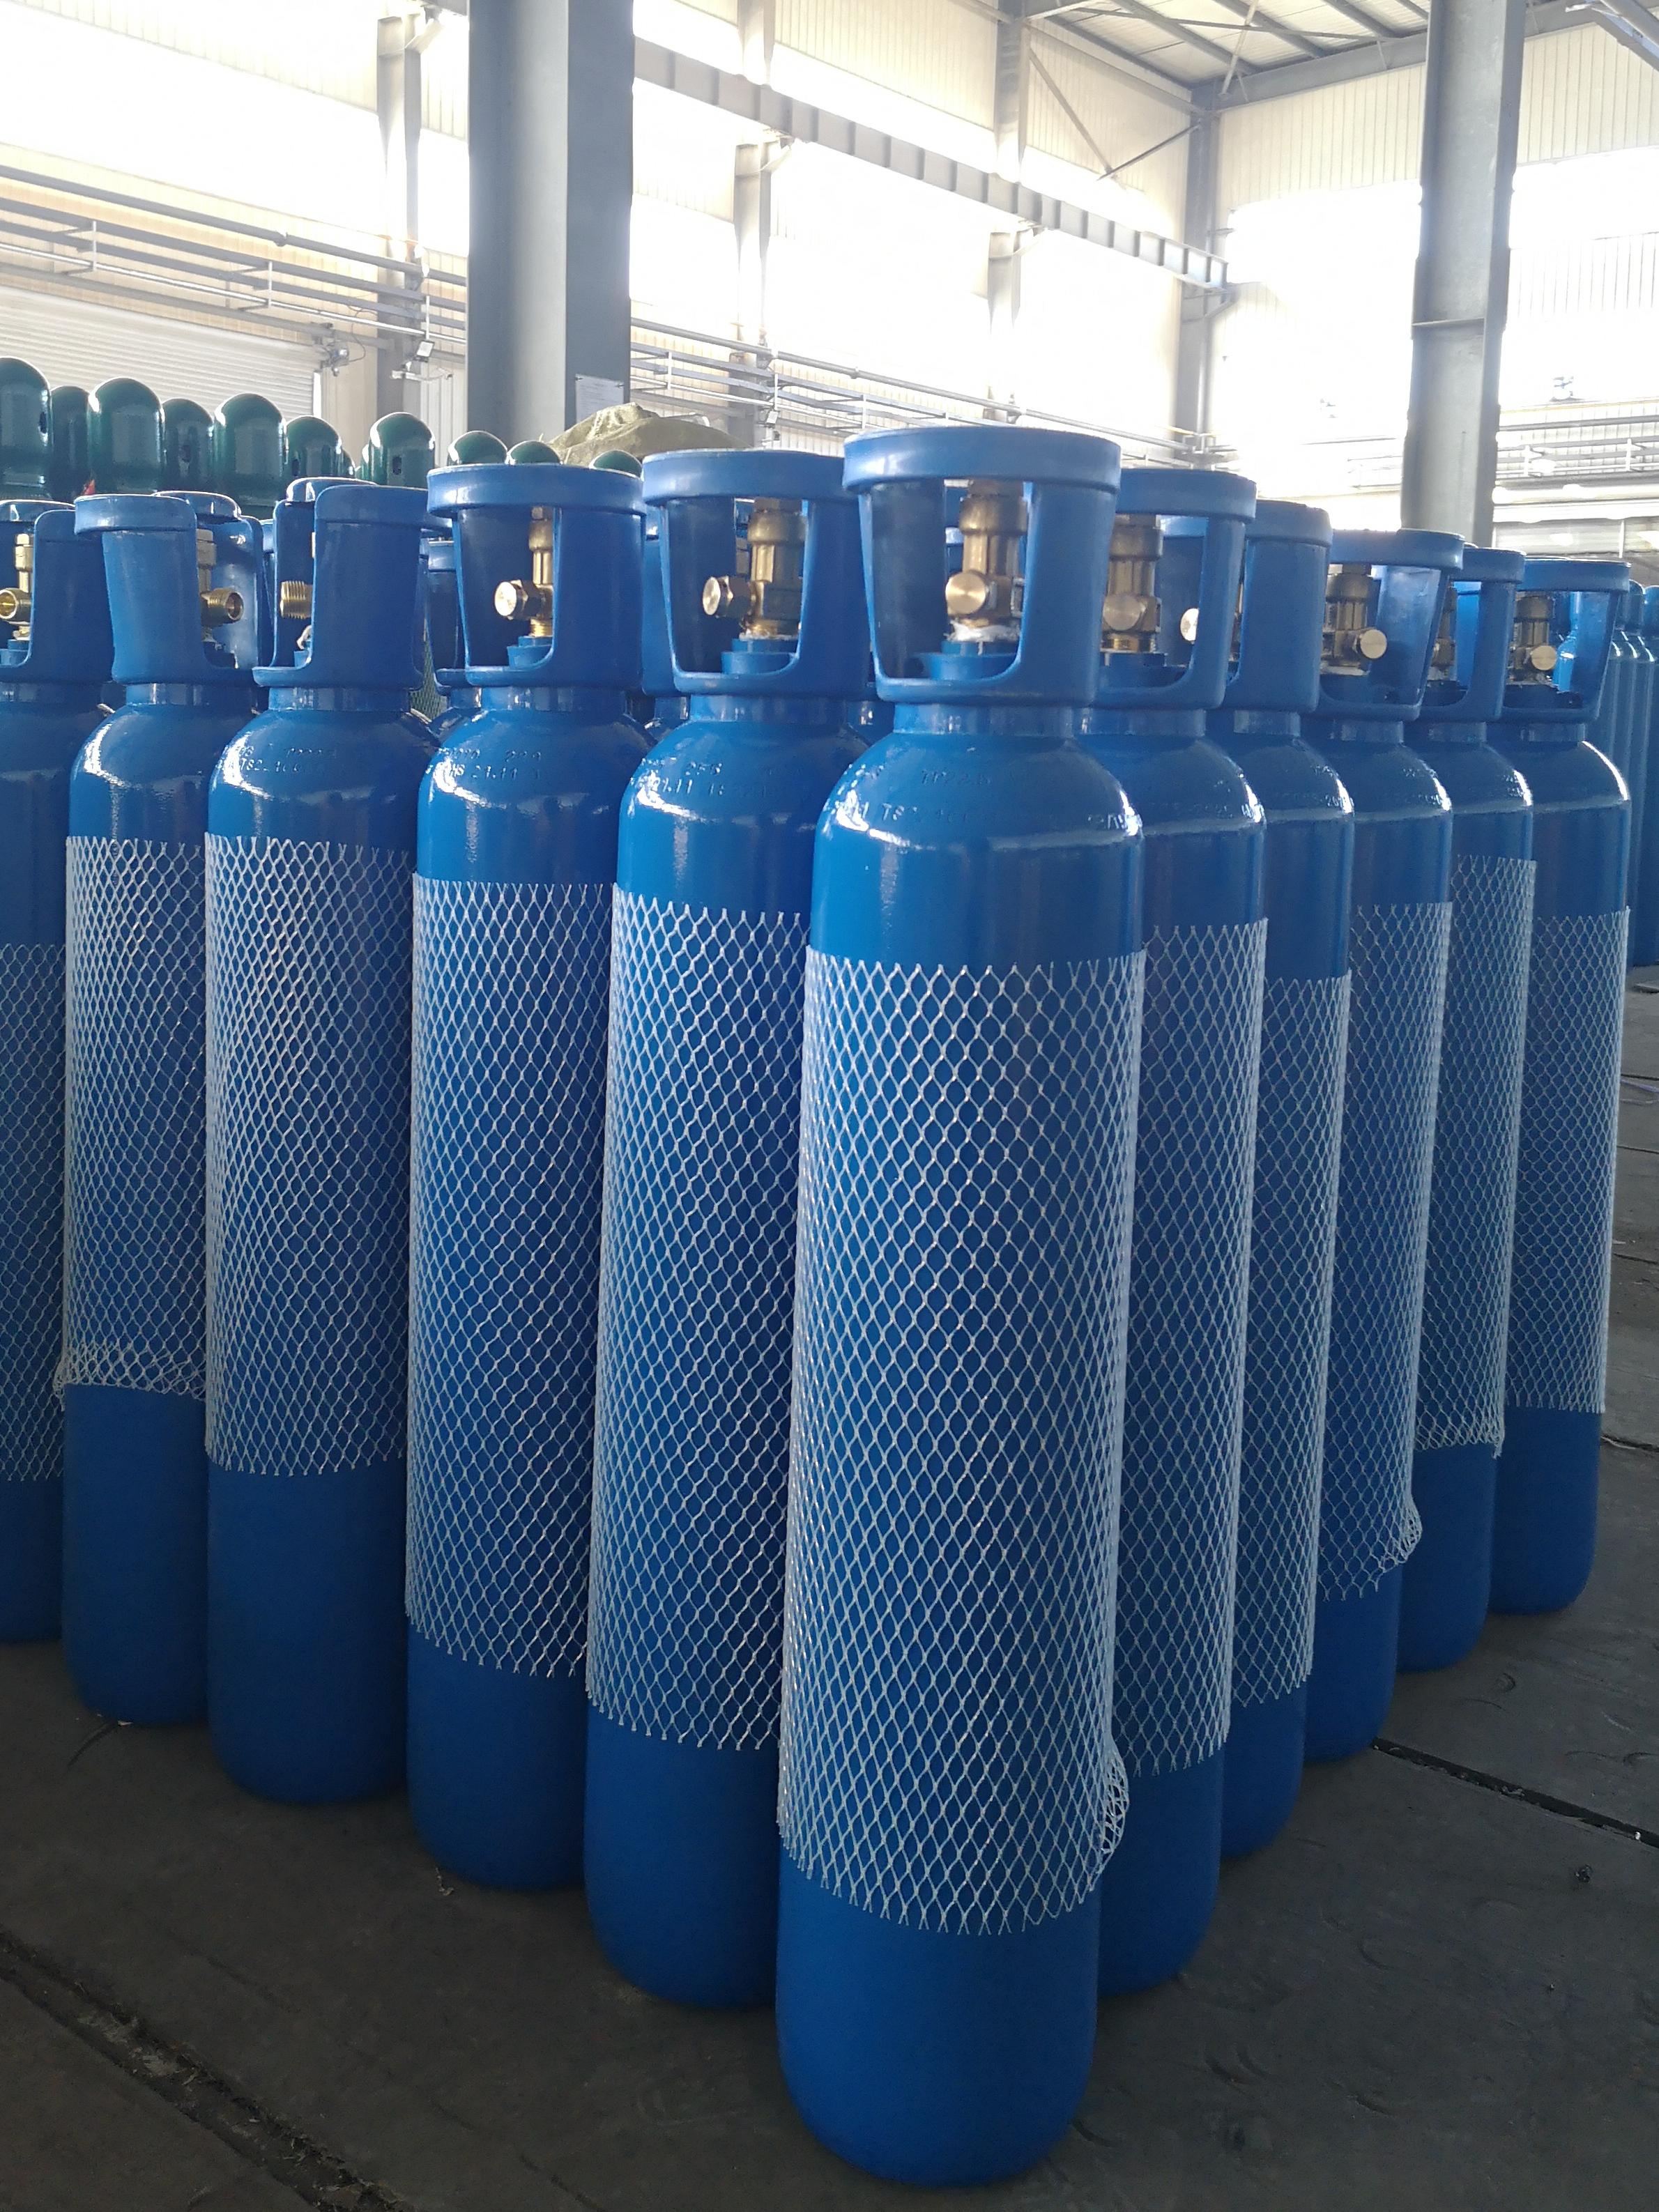 宏晟厂家直销10L氧气瓶提手阀 氮气瓶 二氧化碳瓶 氩气瓶